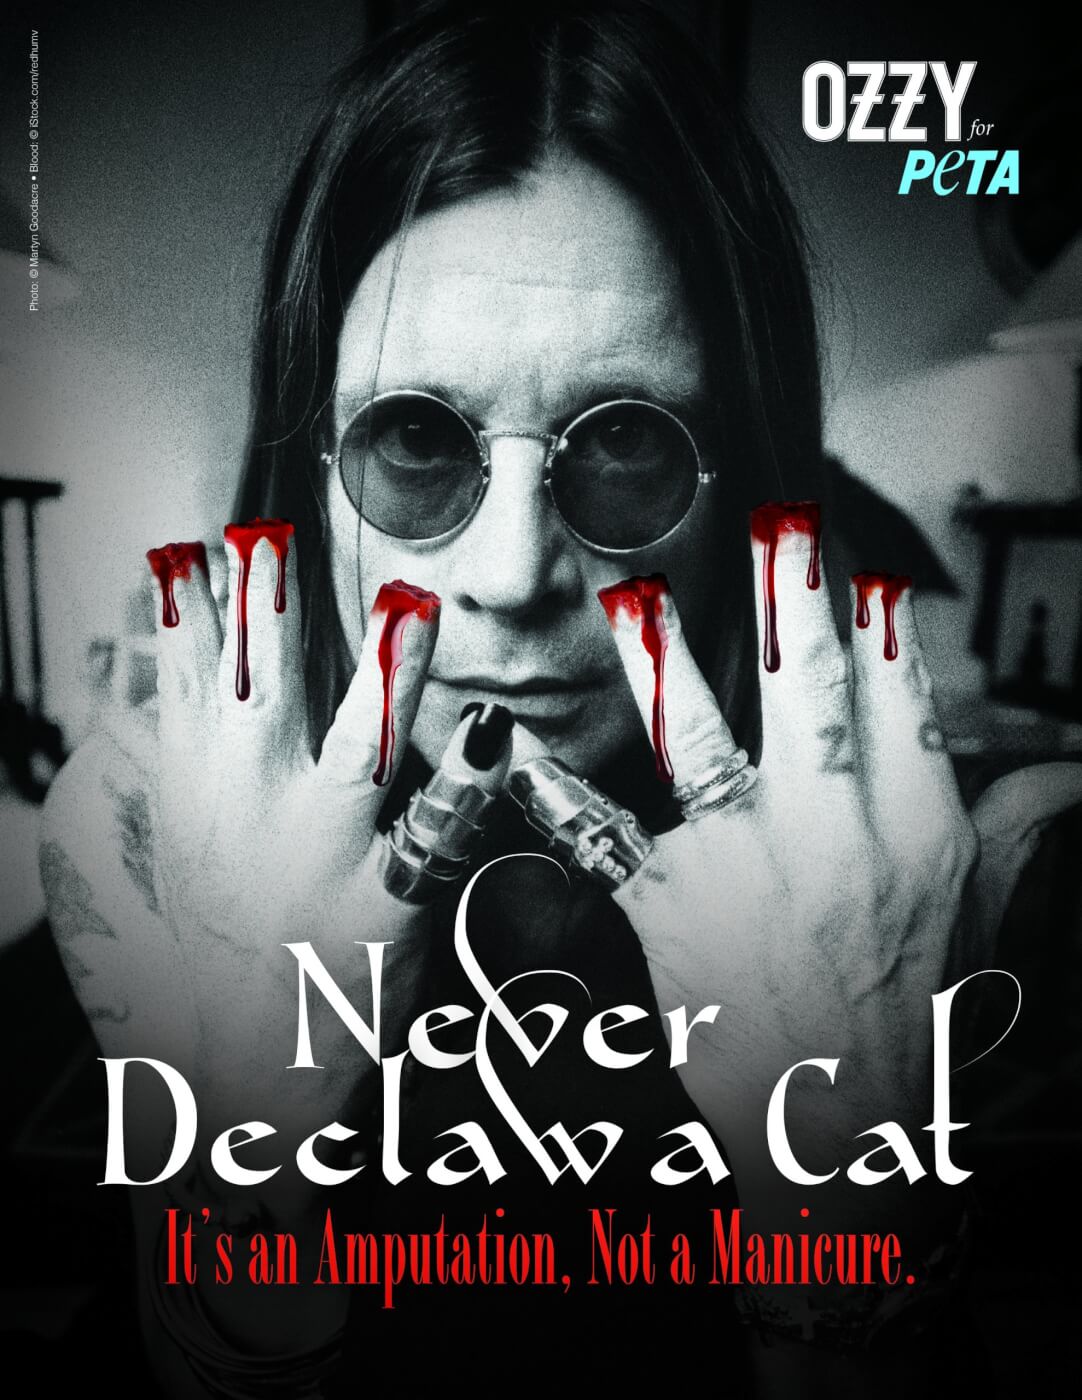  Ozzy  Osbourne Speaks Out Against Cat  Declawing PETA